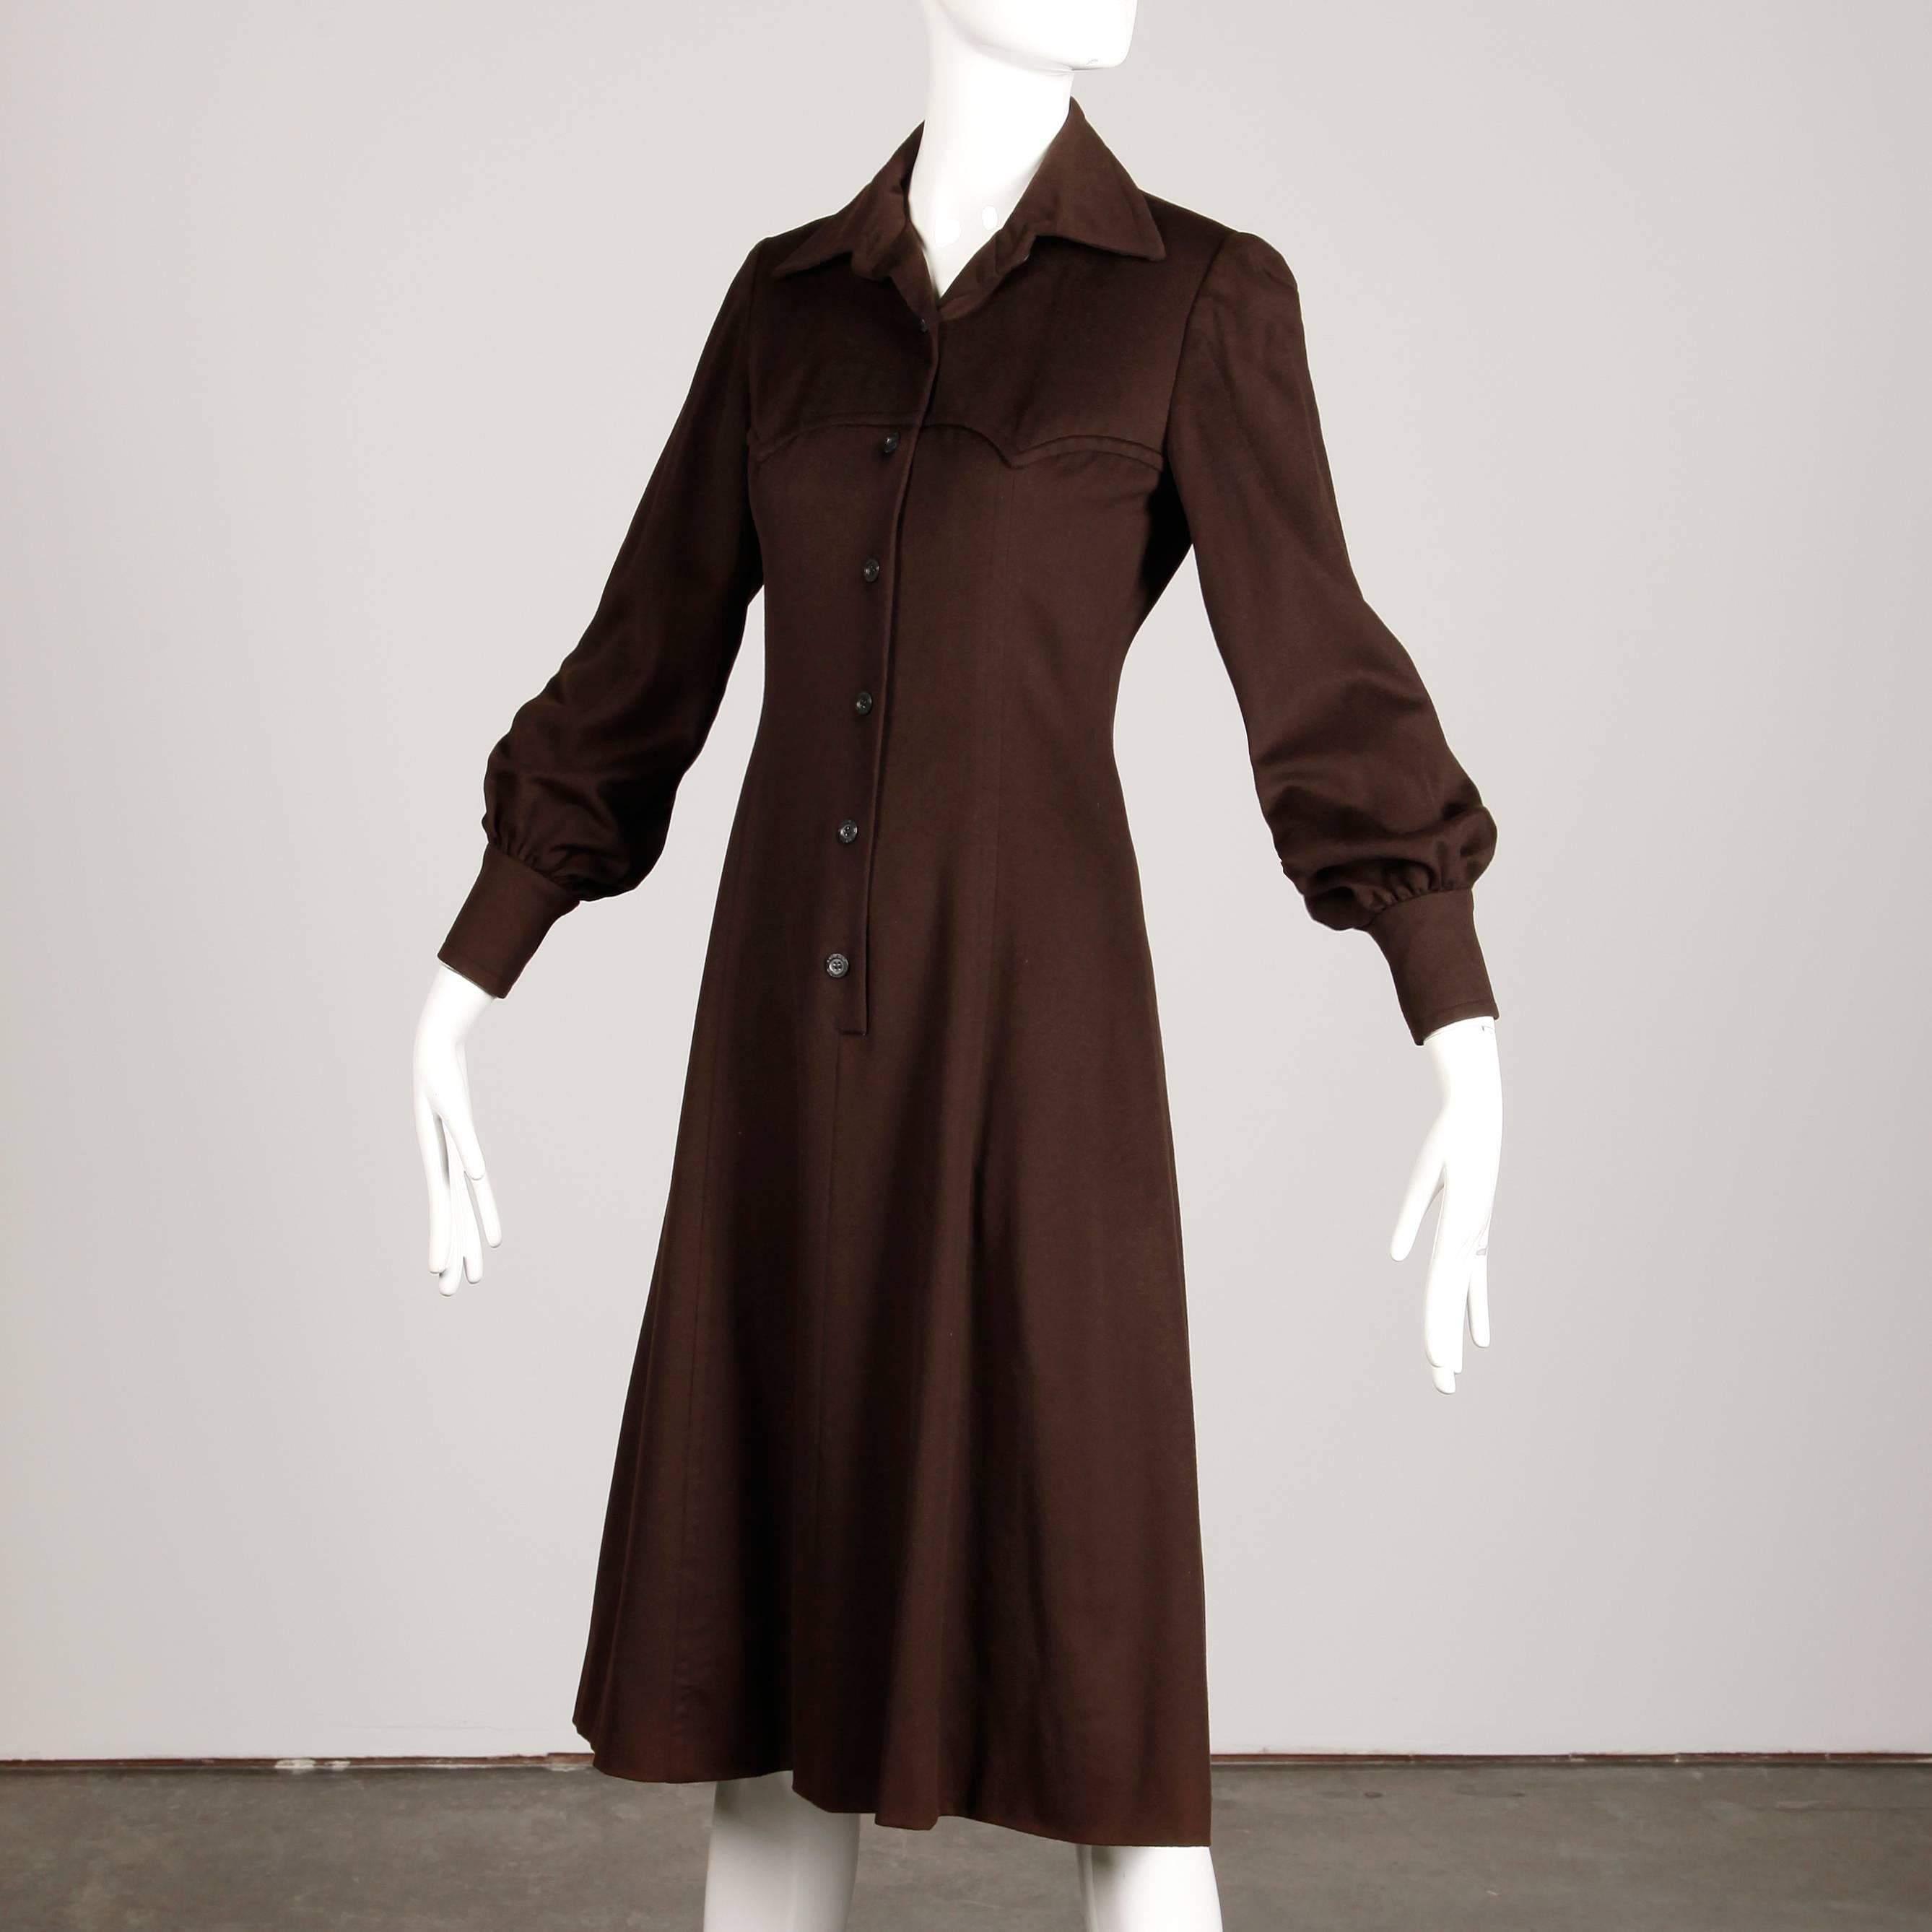 Black 1970s Hermes Vintage Brown Cashmere + Silk Coat or Shirt Dress